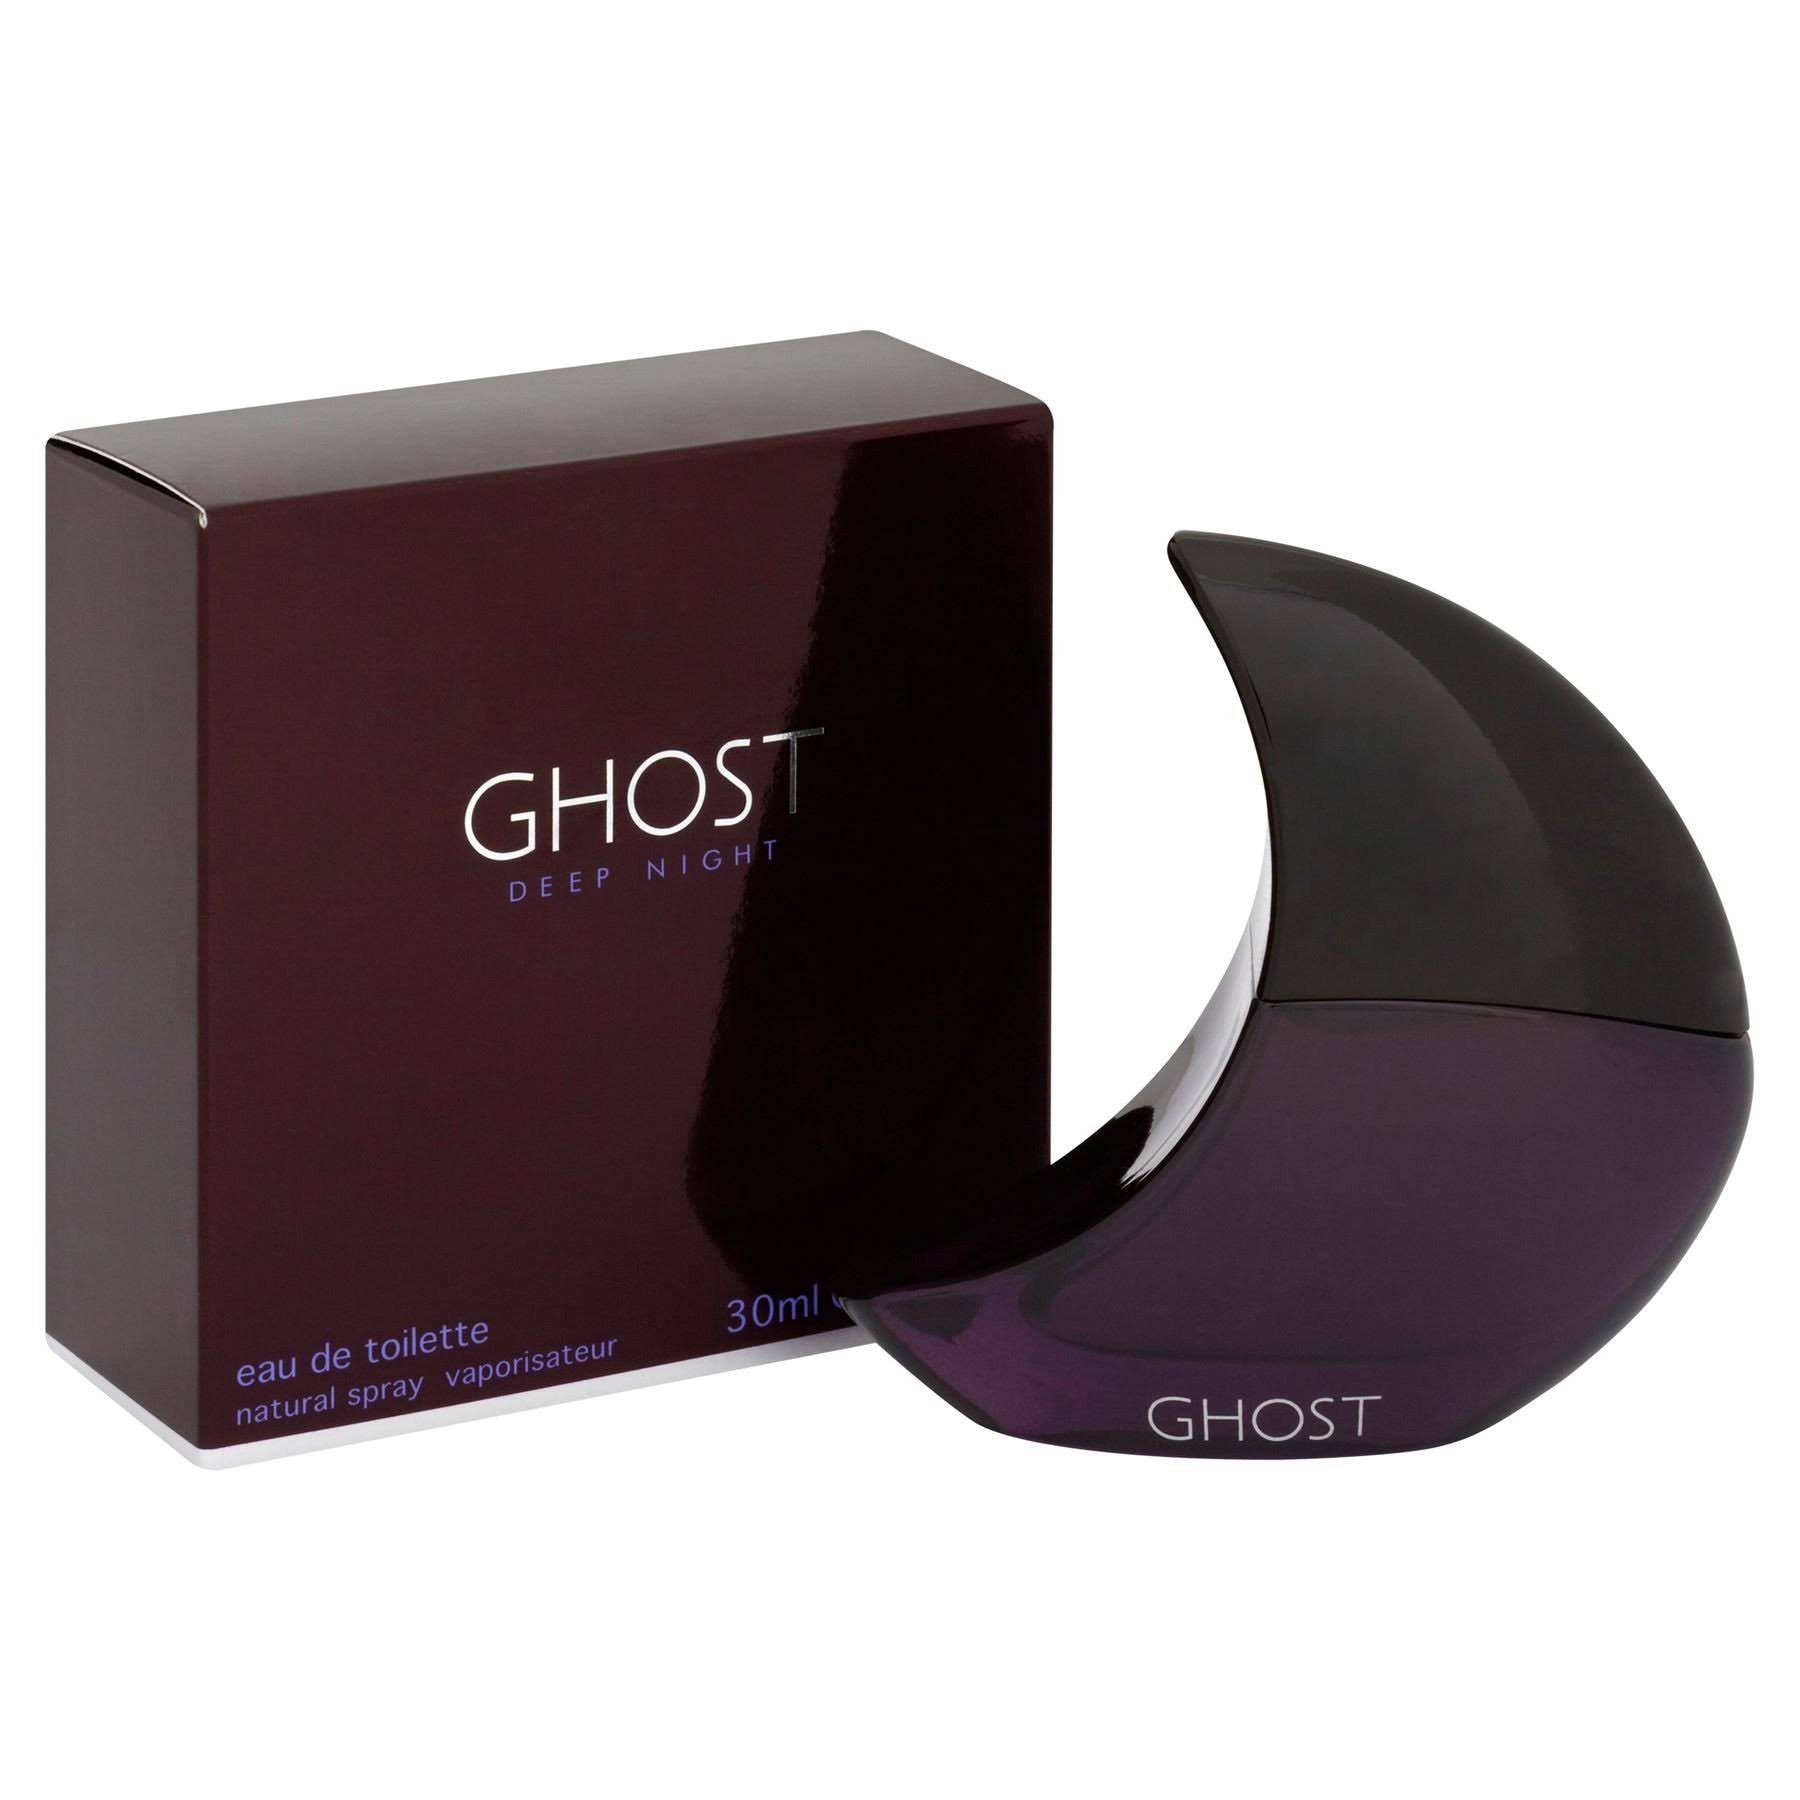 Ghost Deep Night for Women Eau de Toilette Spray - 30ml